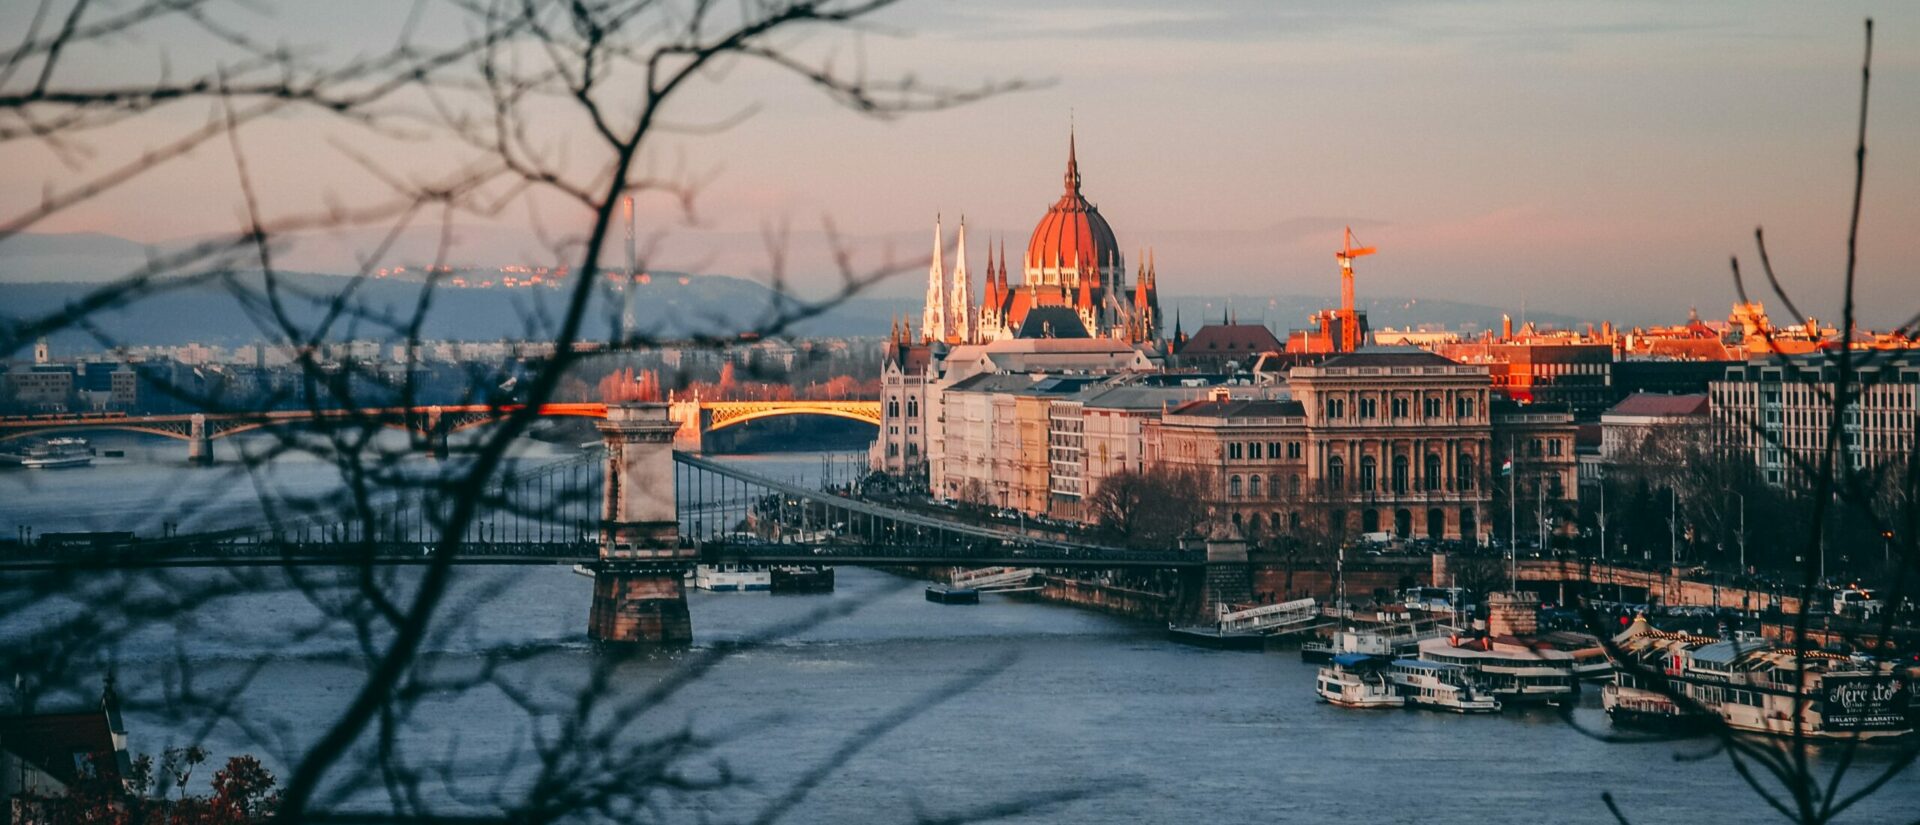 Le pape veut se rendre à Budapest pour le Congrès eucharistique international, en septembre 2021 | © Dan Novac/Unsplash